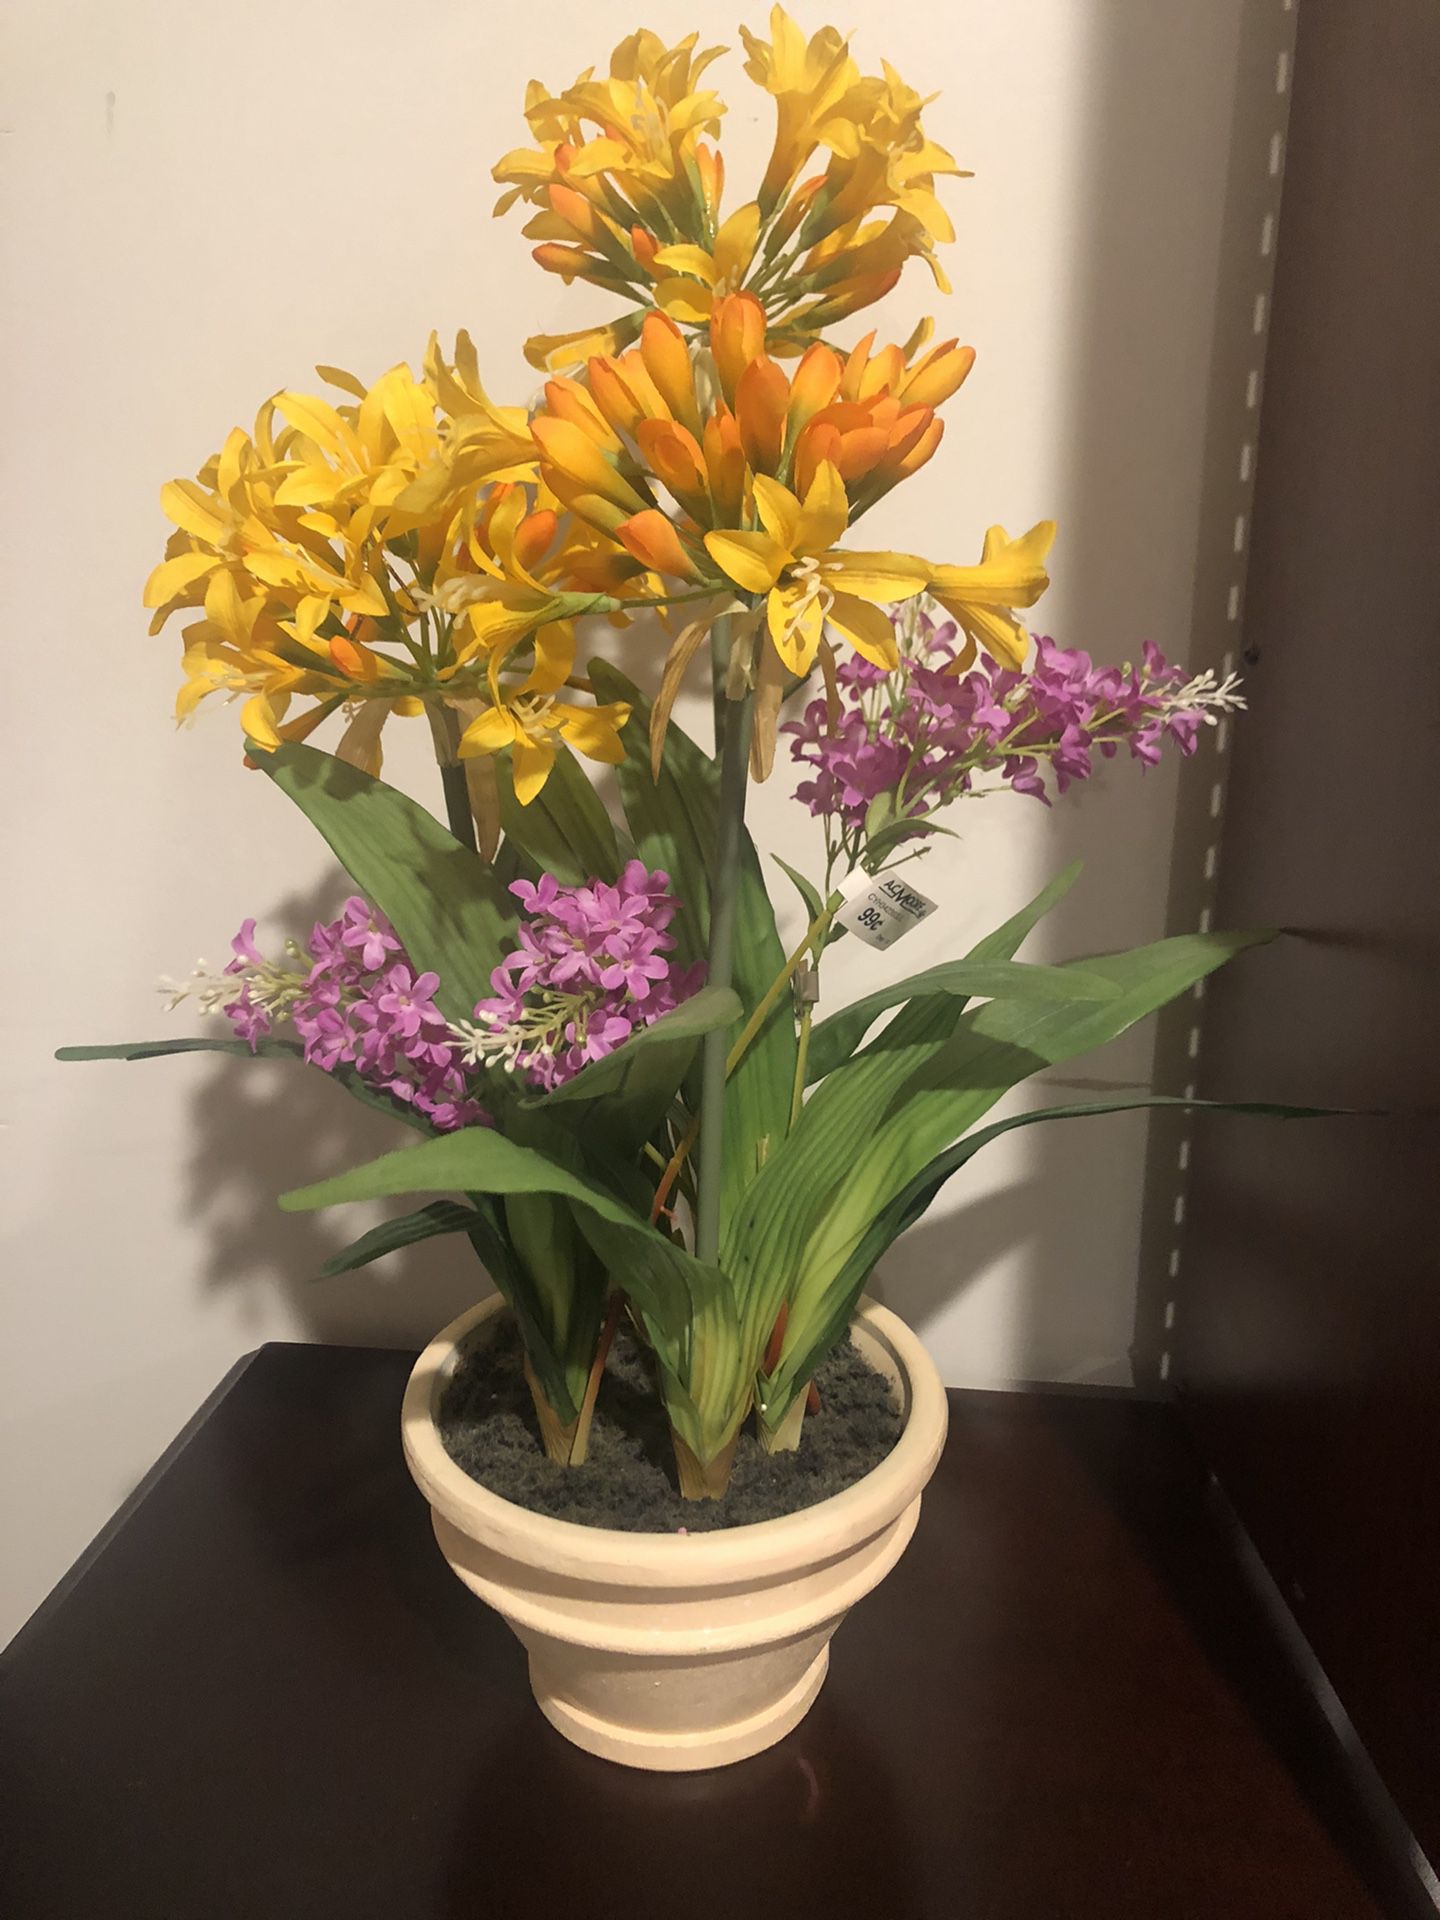 Flower arrangement in a Pot